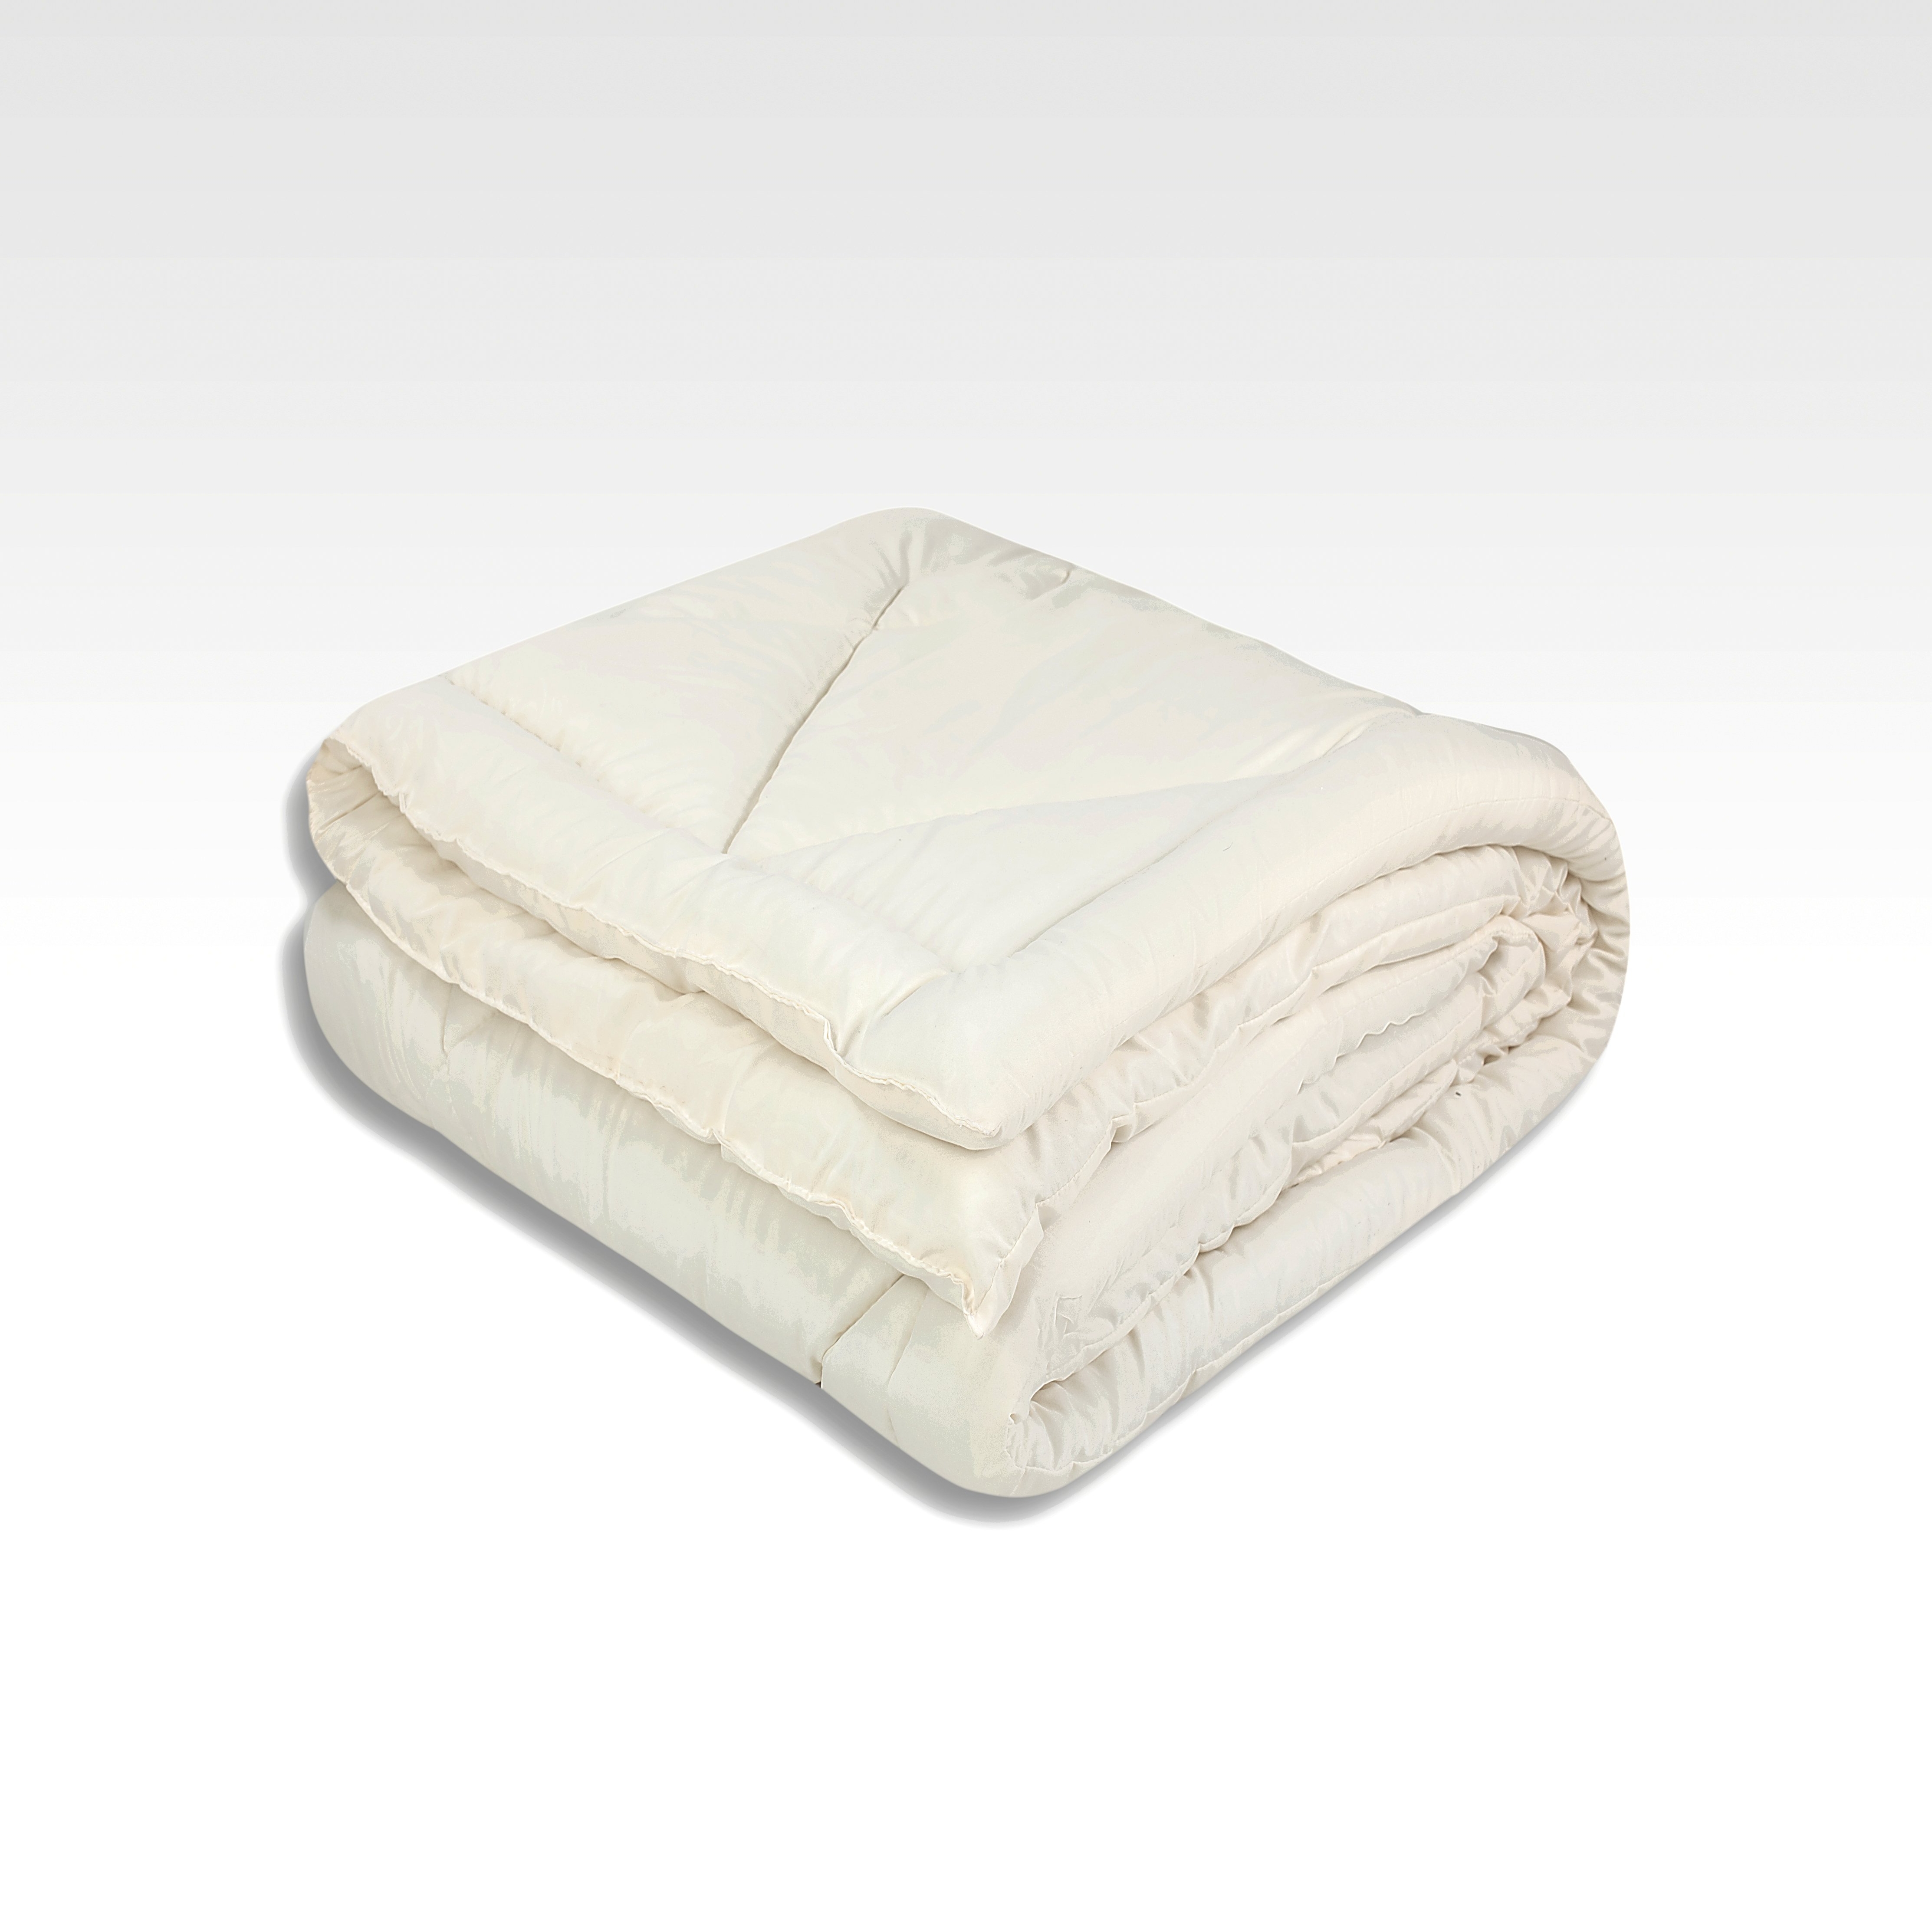 Одеяло Prestine Всесезонное (140х205 см), размер 140х205 см vas435484 Одеяло Prestine Всесезонное (140х205 см) - фото 1